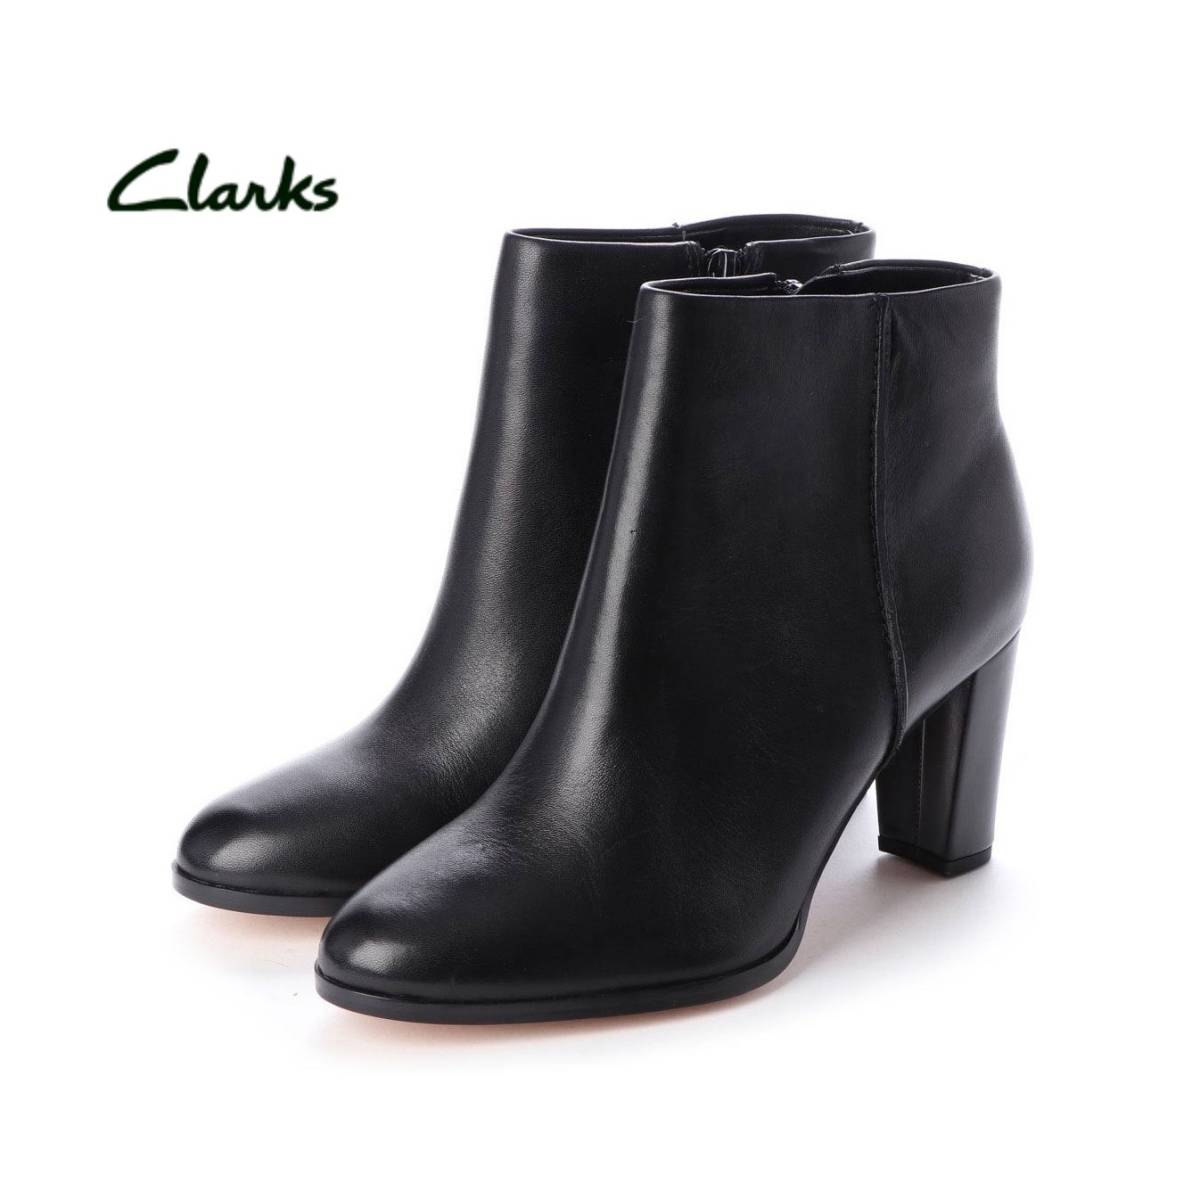 【新品】￥27,500 Clarks Kaylin Fern 黒 本革ショート ブーツ ブーティ クラークス(UK6、US8 1/2、EU39 1/2) ブラック チャンキーヒール